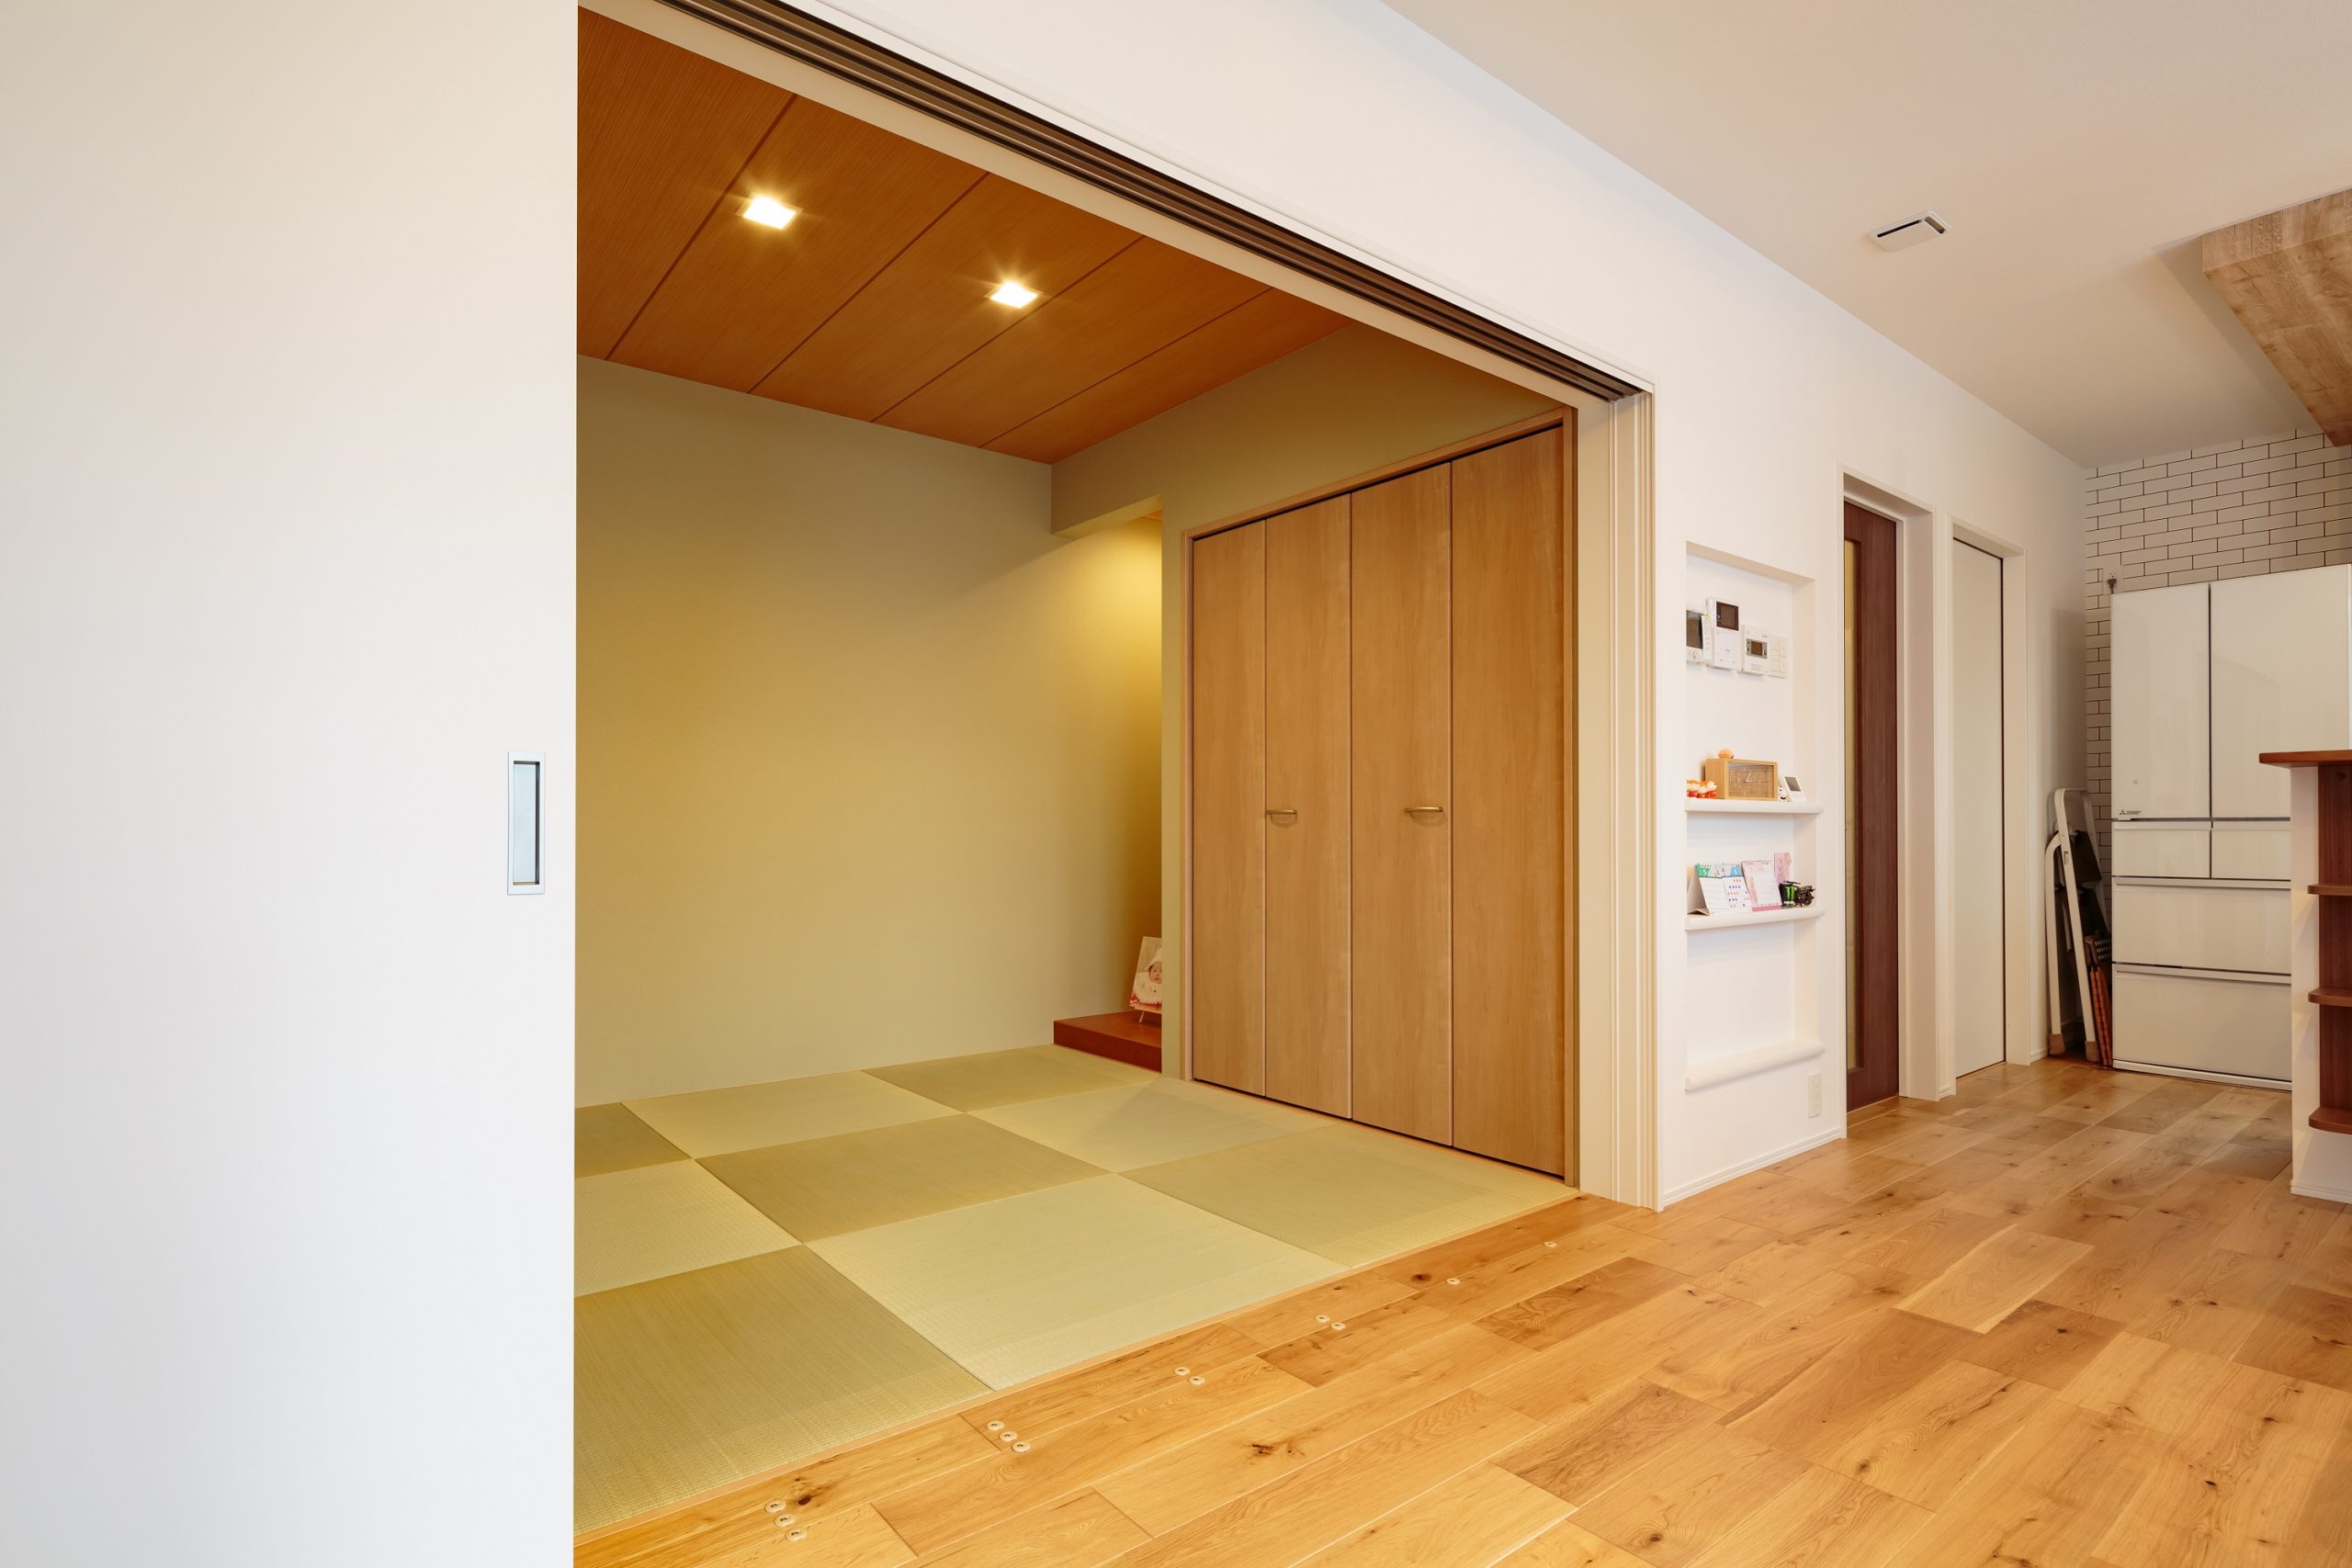 おこもり感のある4.5畳の和室は床の間がある本格的な造り。段差がないので小さなお子様がいても安心です